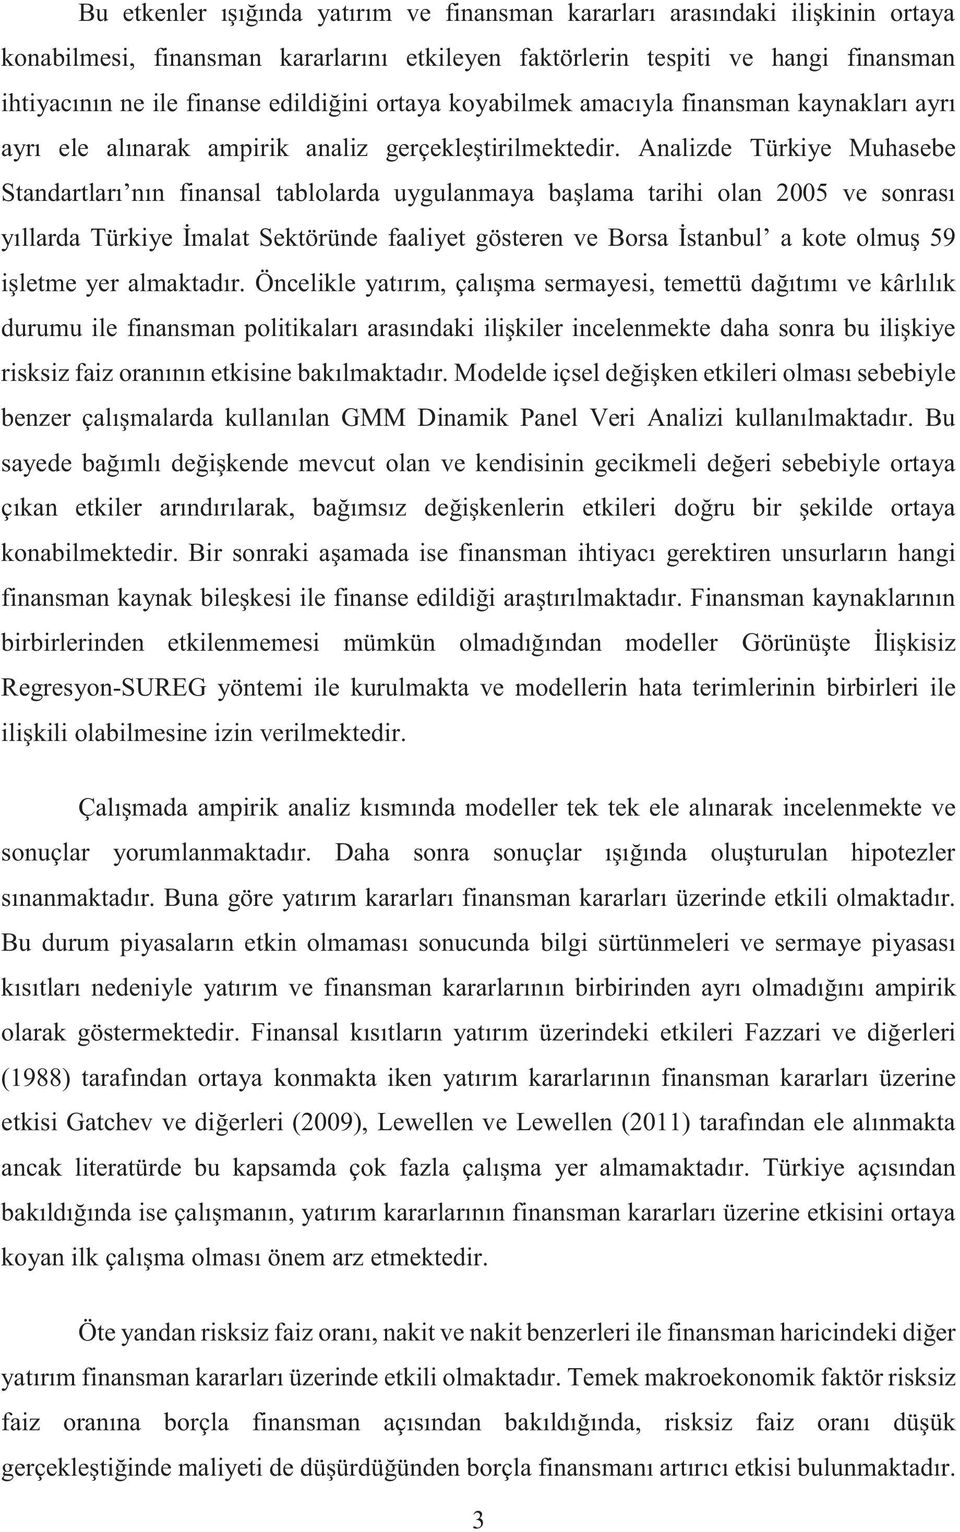 Analizde Türkiye Muhasebe Standartları nın finansal tablolarda uygulanmaya başlama tarihi olan 2005 ve sonrası yıllarda Türkiye İmalat Sektöründe faaliyet gösteren ve Borsa İstanbul a kote olmuş 59